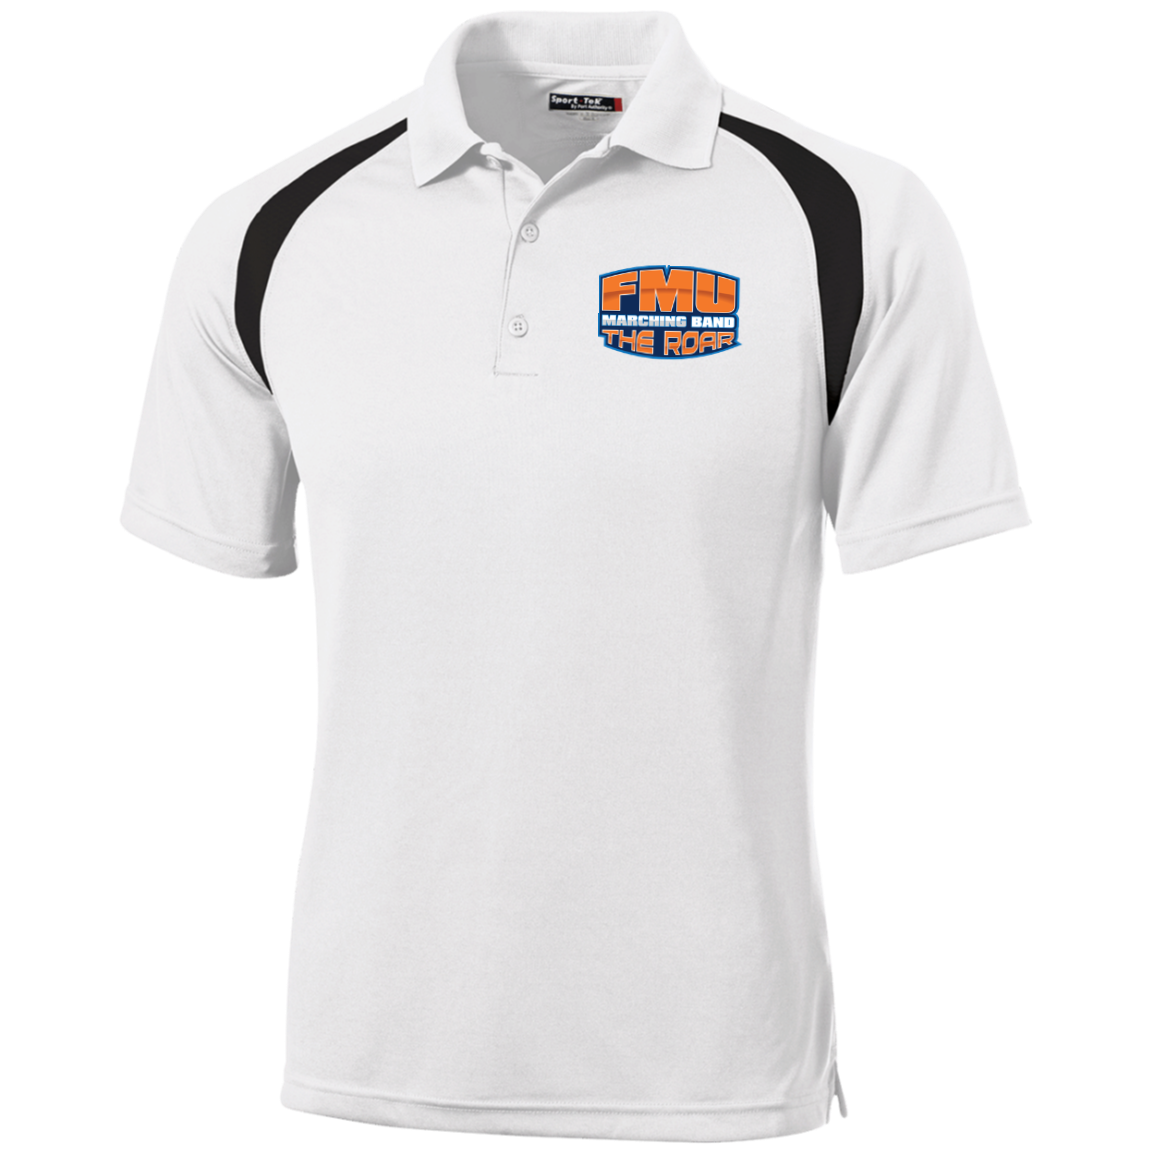 "ROAR Staff  Moisture-Wicking Tag-Free Golf Shirt